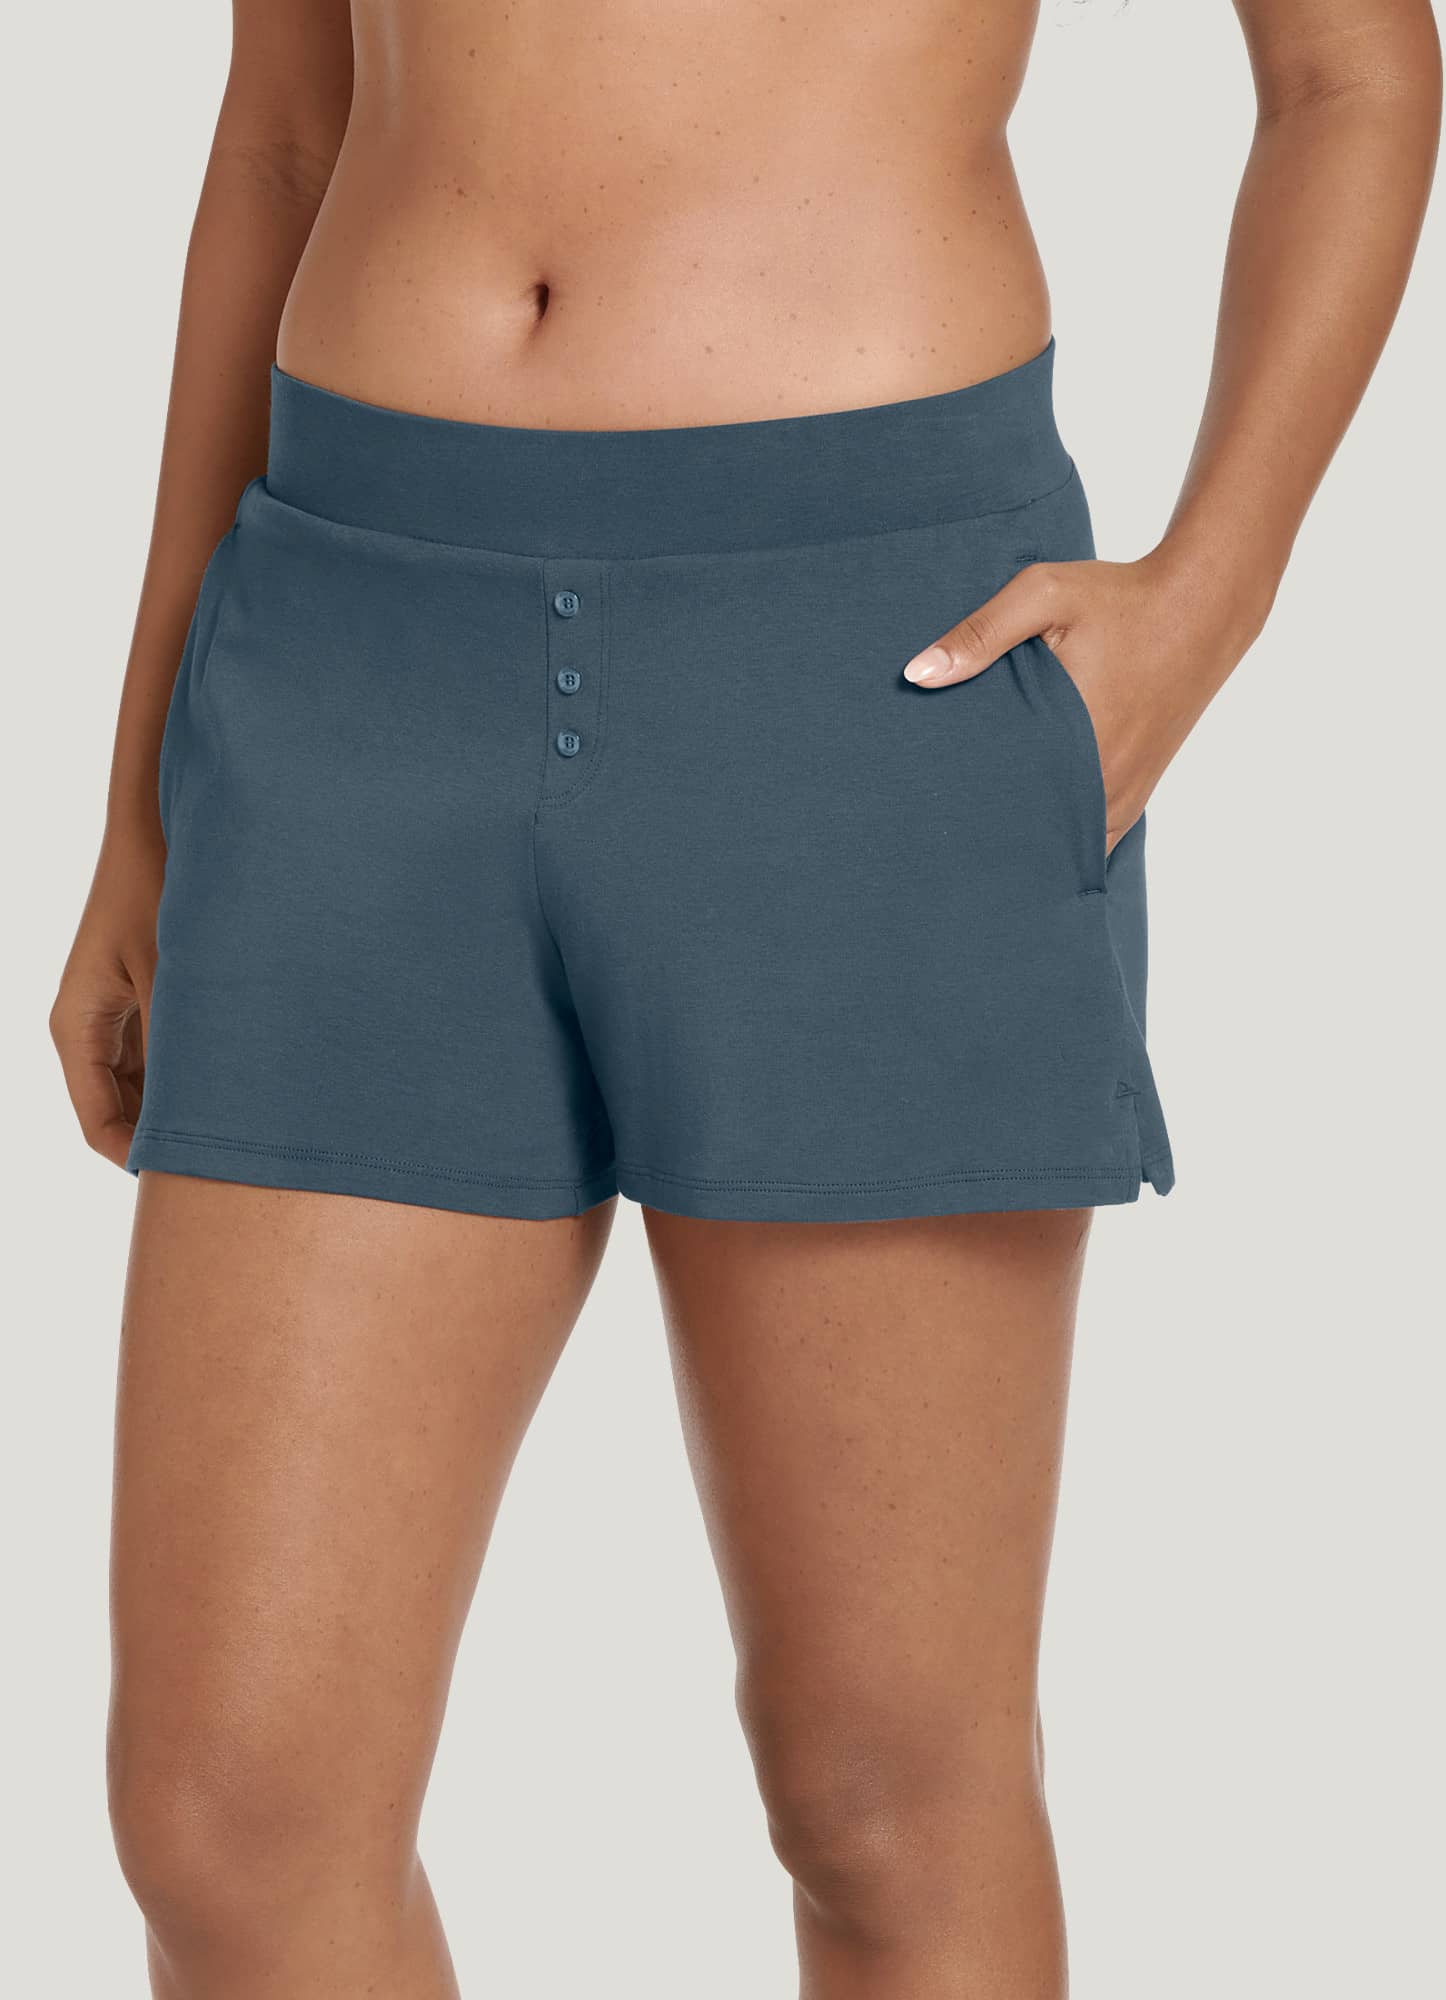 Women's Stretch Sanitary Boy Shorts